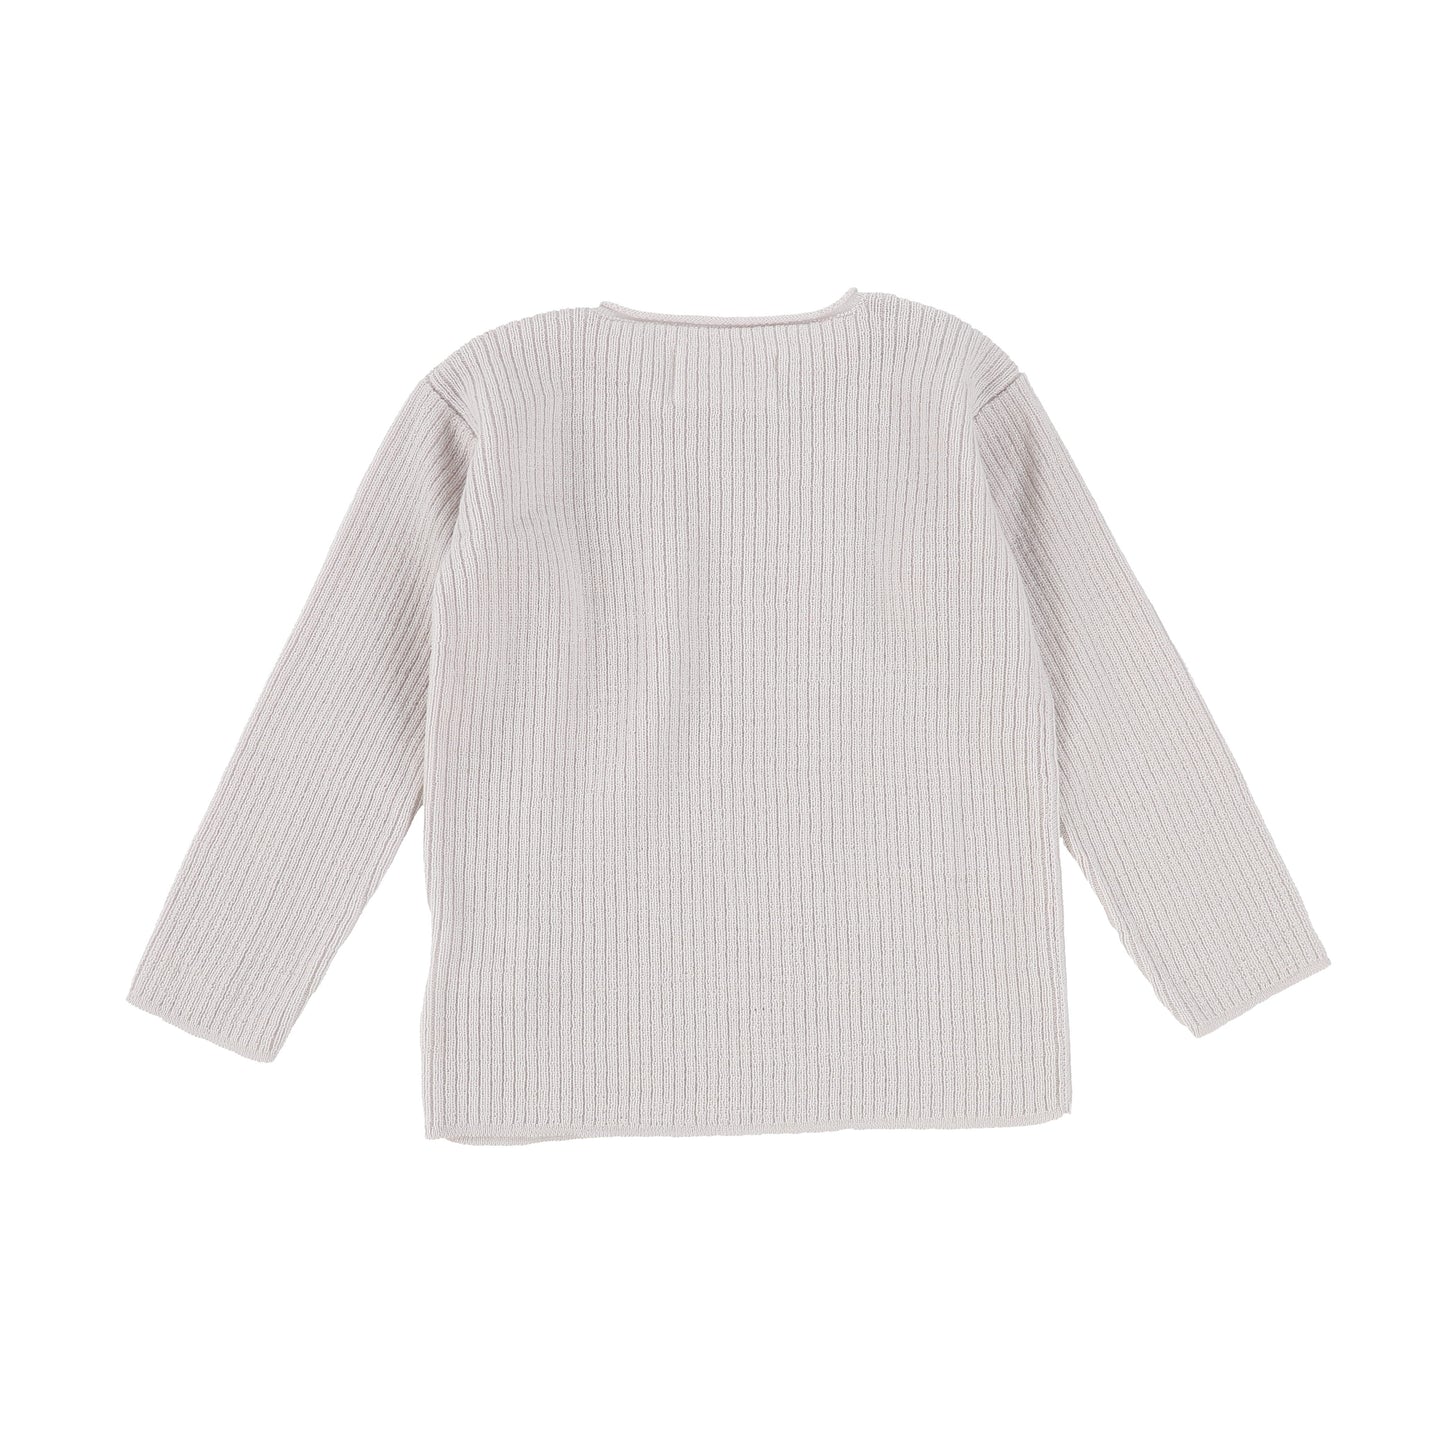 Aymara Cement Knit Button Sweater [Final Sale]